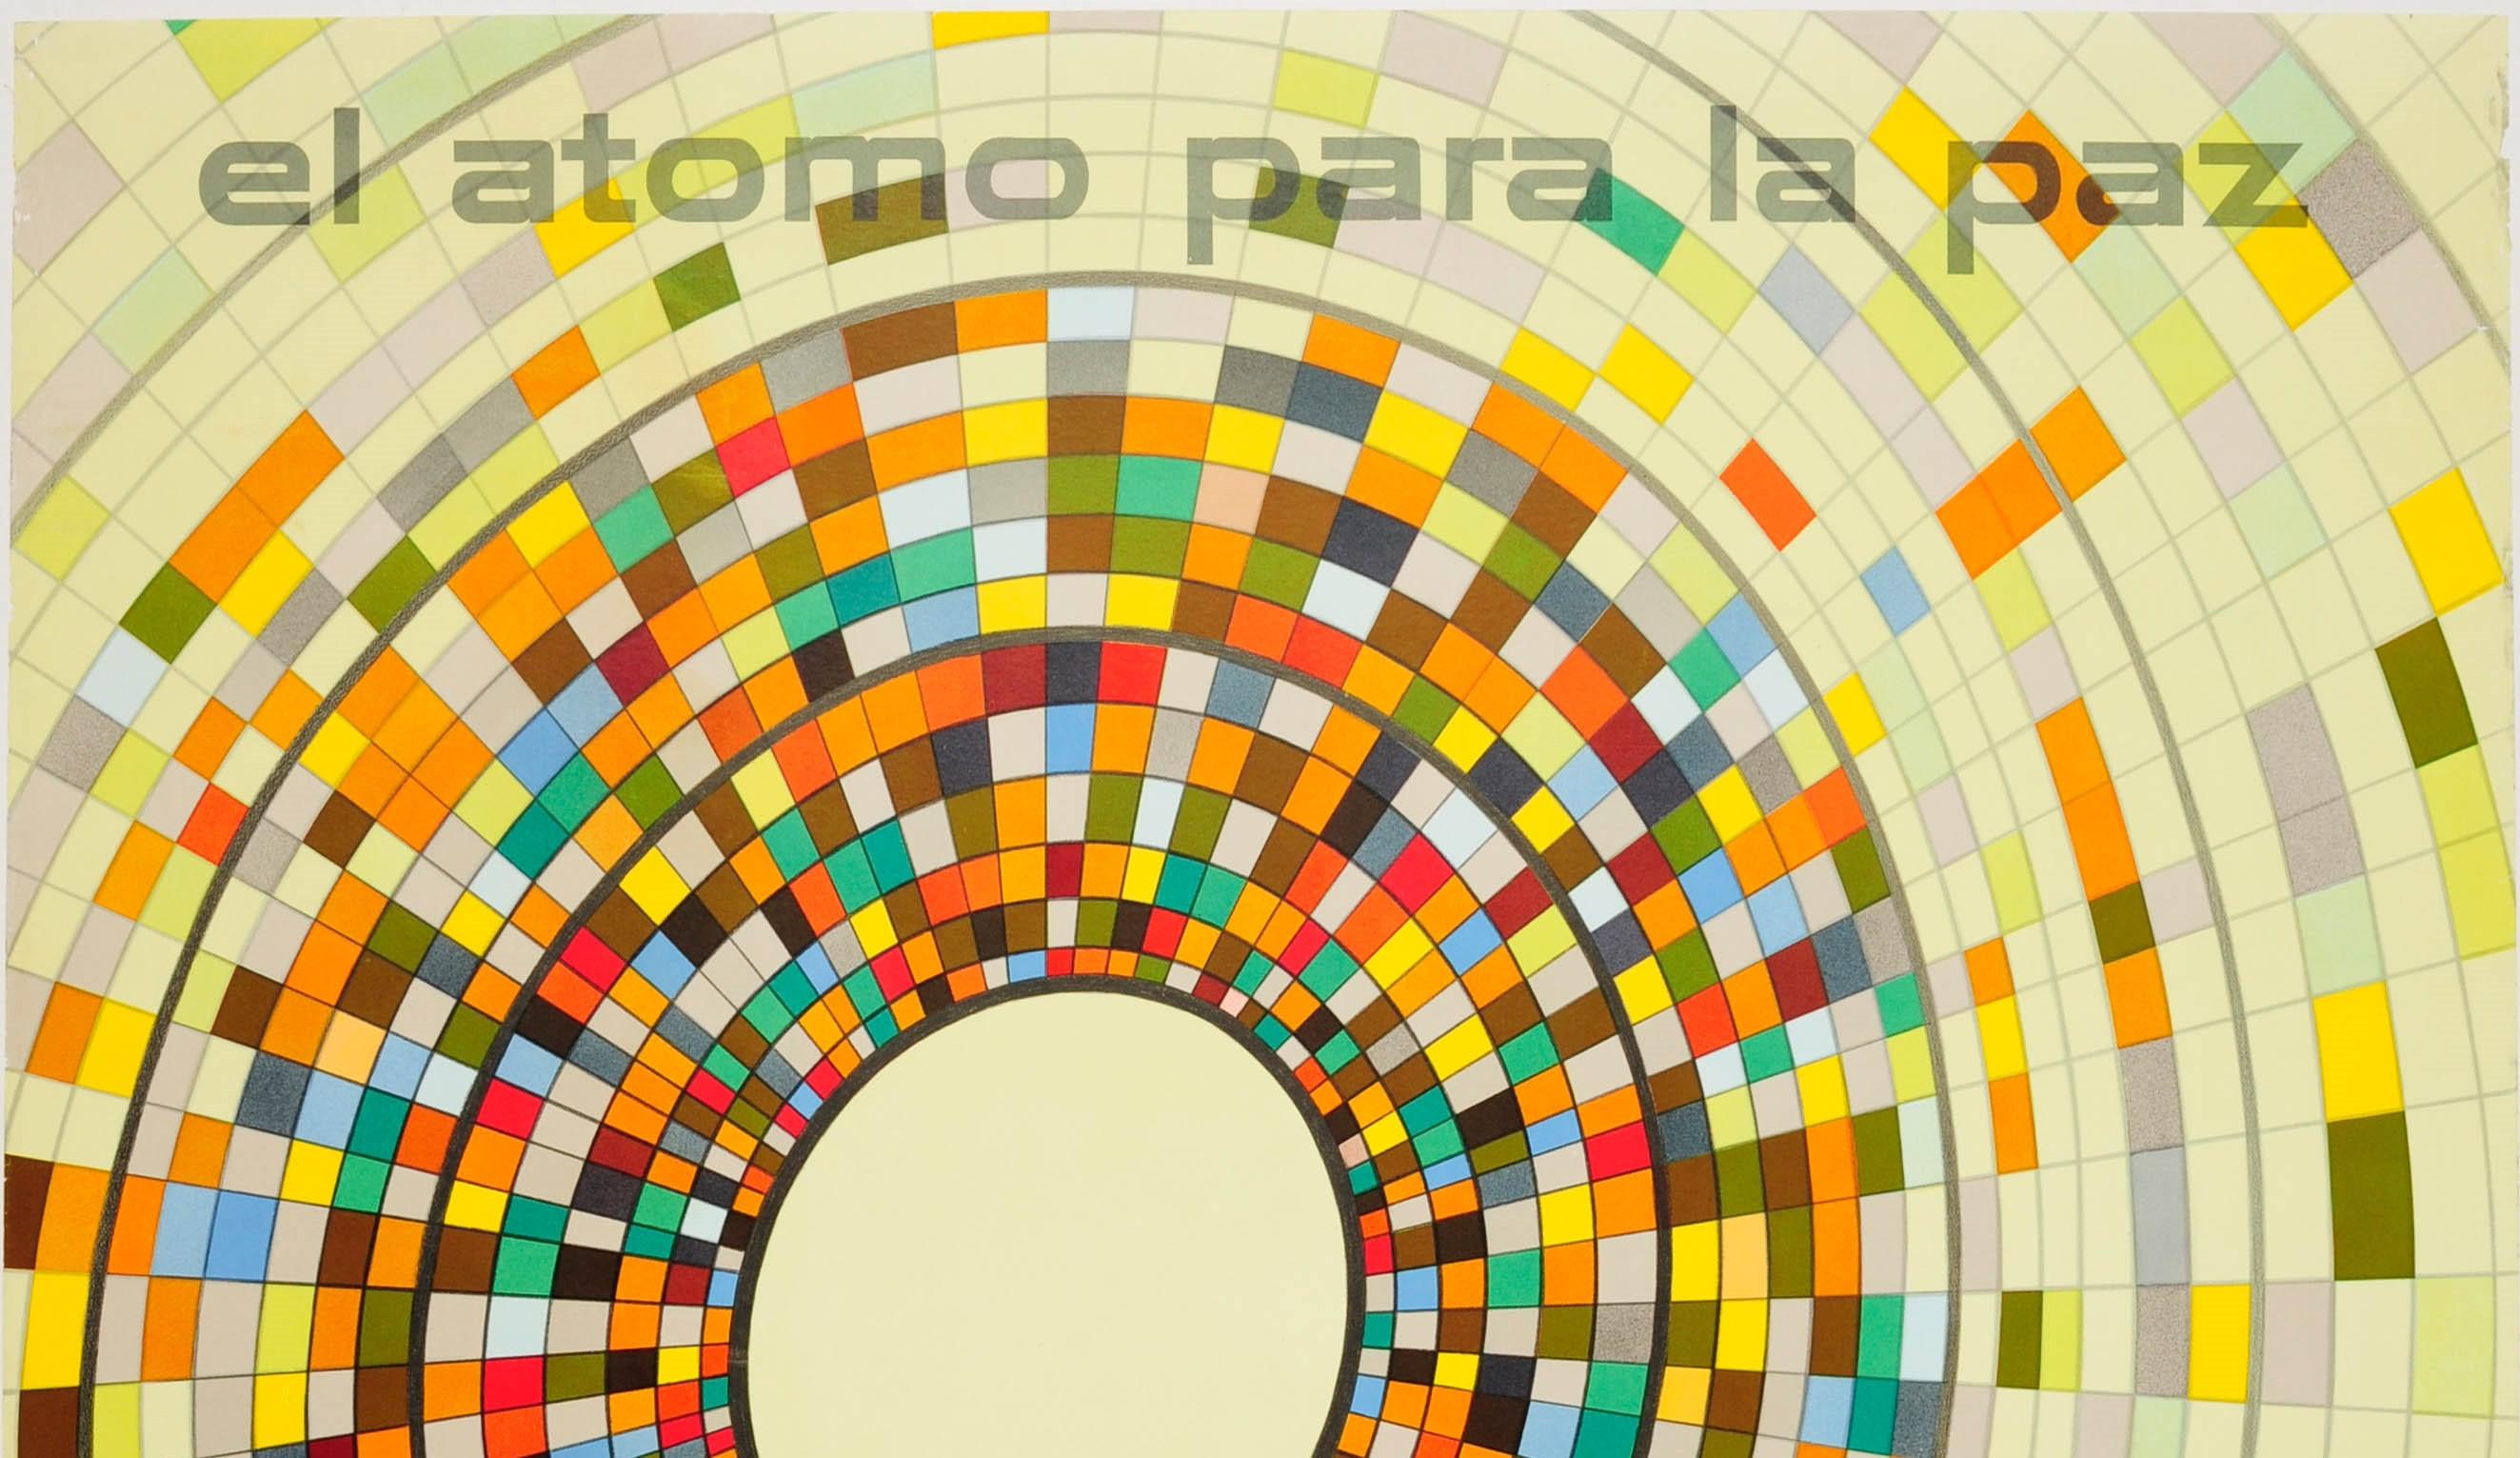 Originalplakat von General Dynamics zur Werbung für El Atomo Para La Paz Solar Dynamics des Illustrators, Typografen und Grafikdesigners Erik Nitsche (1908-1998). Großartige Illustration mit mehrfarbigen Quadraten, die von dunklen zu verblassten